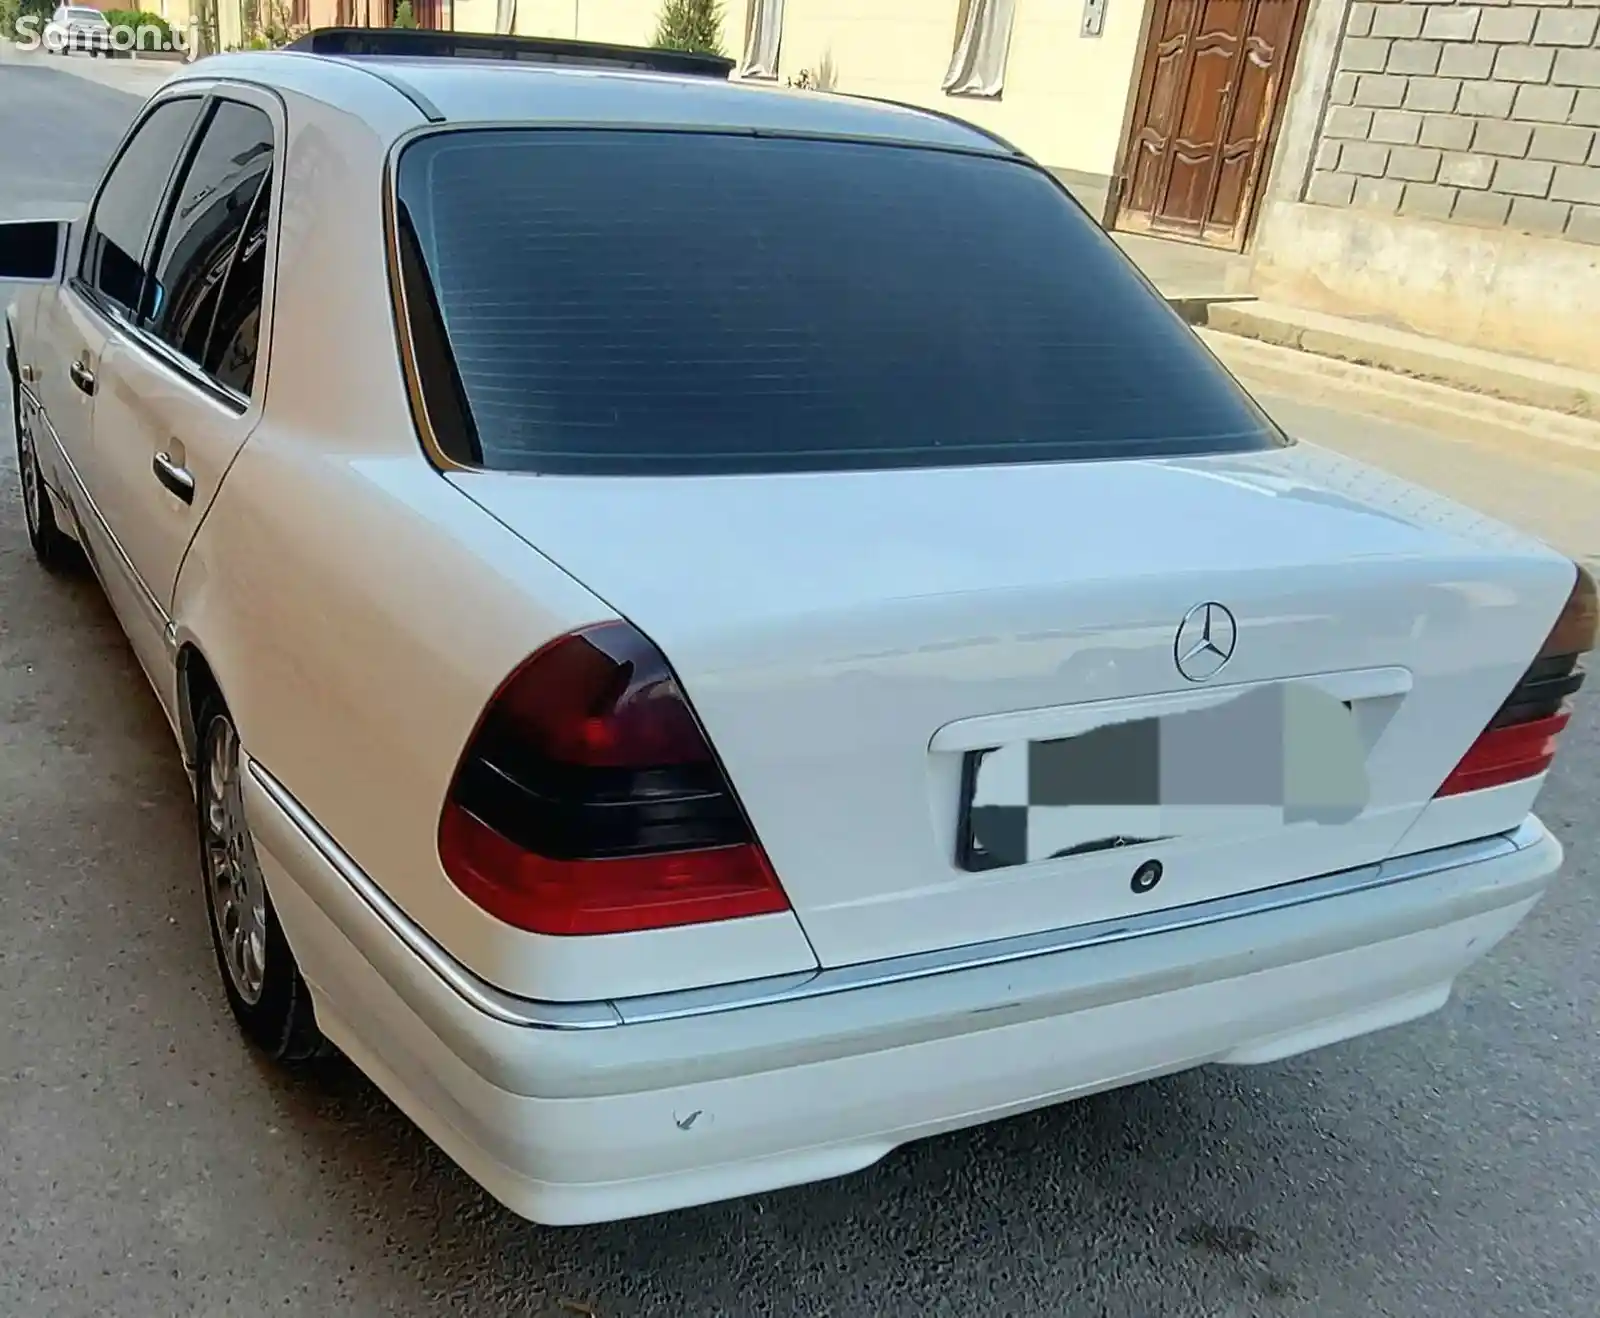 Mercedes-Benz C class, 1993-2